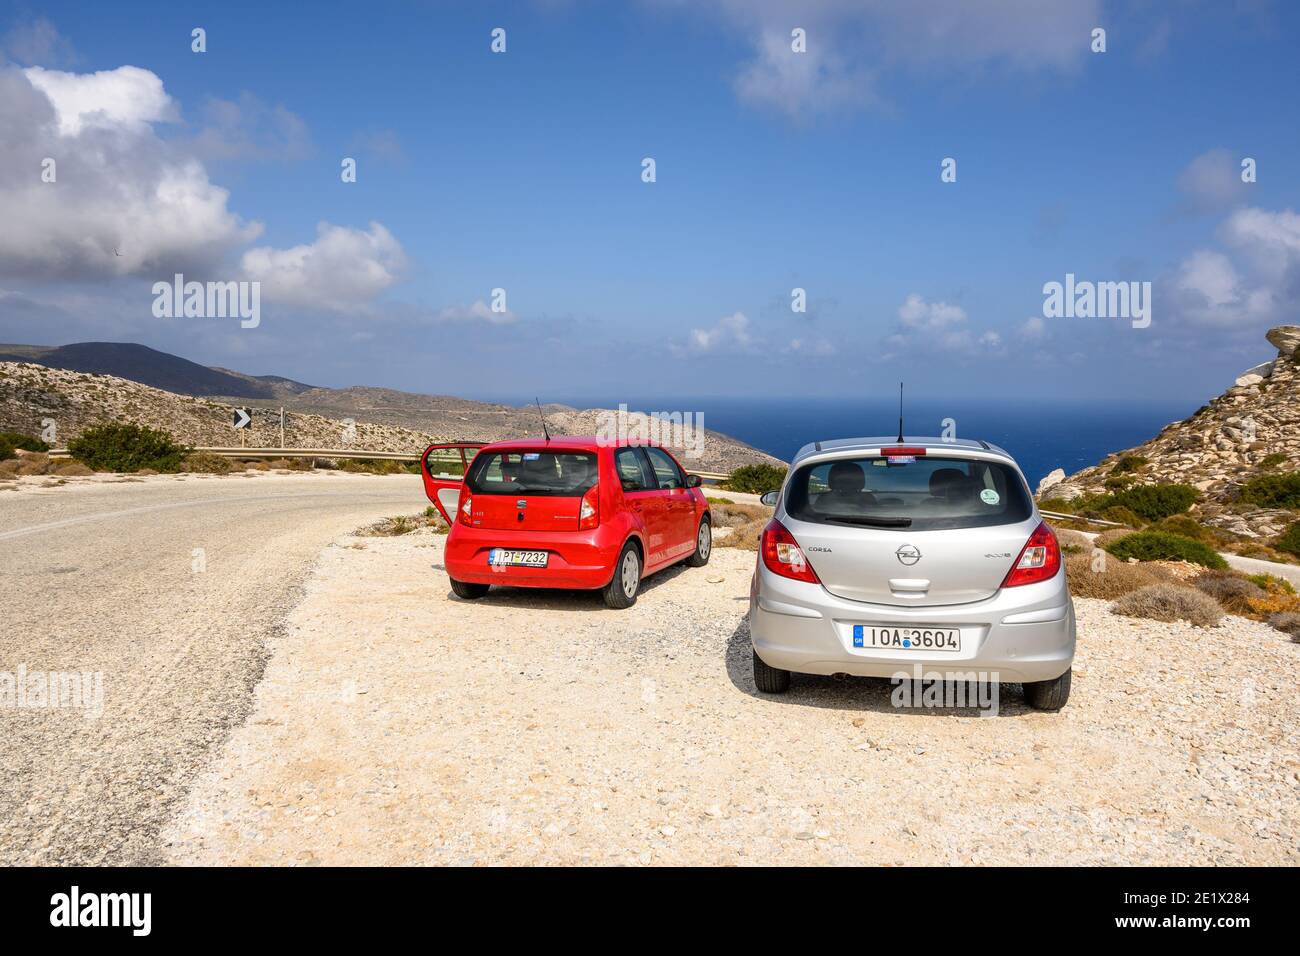 IOS, Grèce - 21 septembre 2020 : Opel Corsa et Seat Mii sur la route dans la partie est de l'île d'iOS. Cyclades, Grèce Banque D'Images